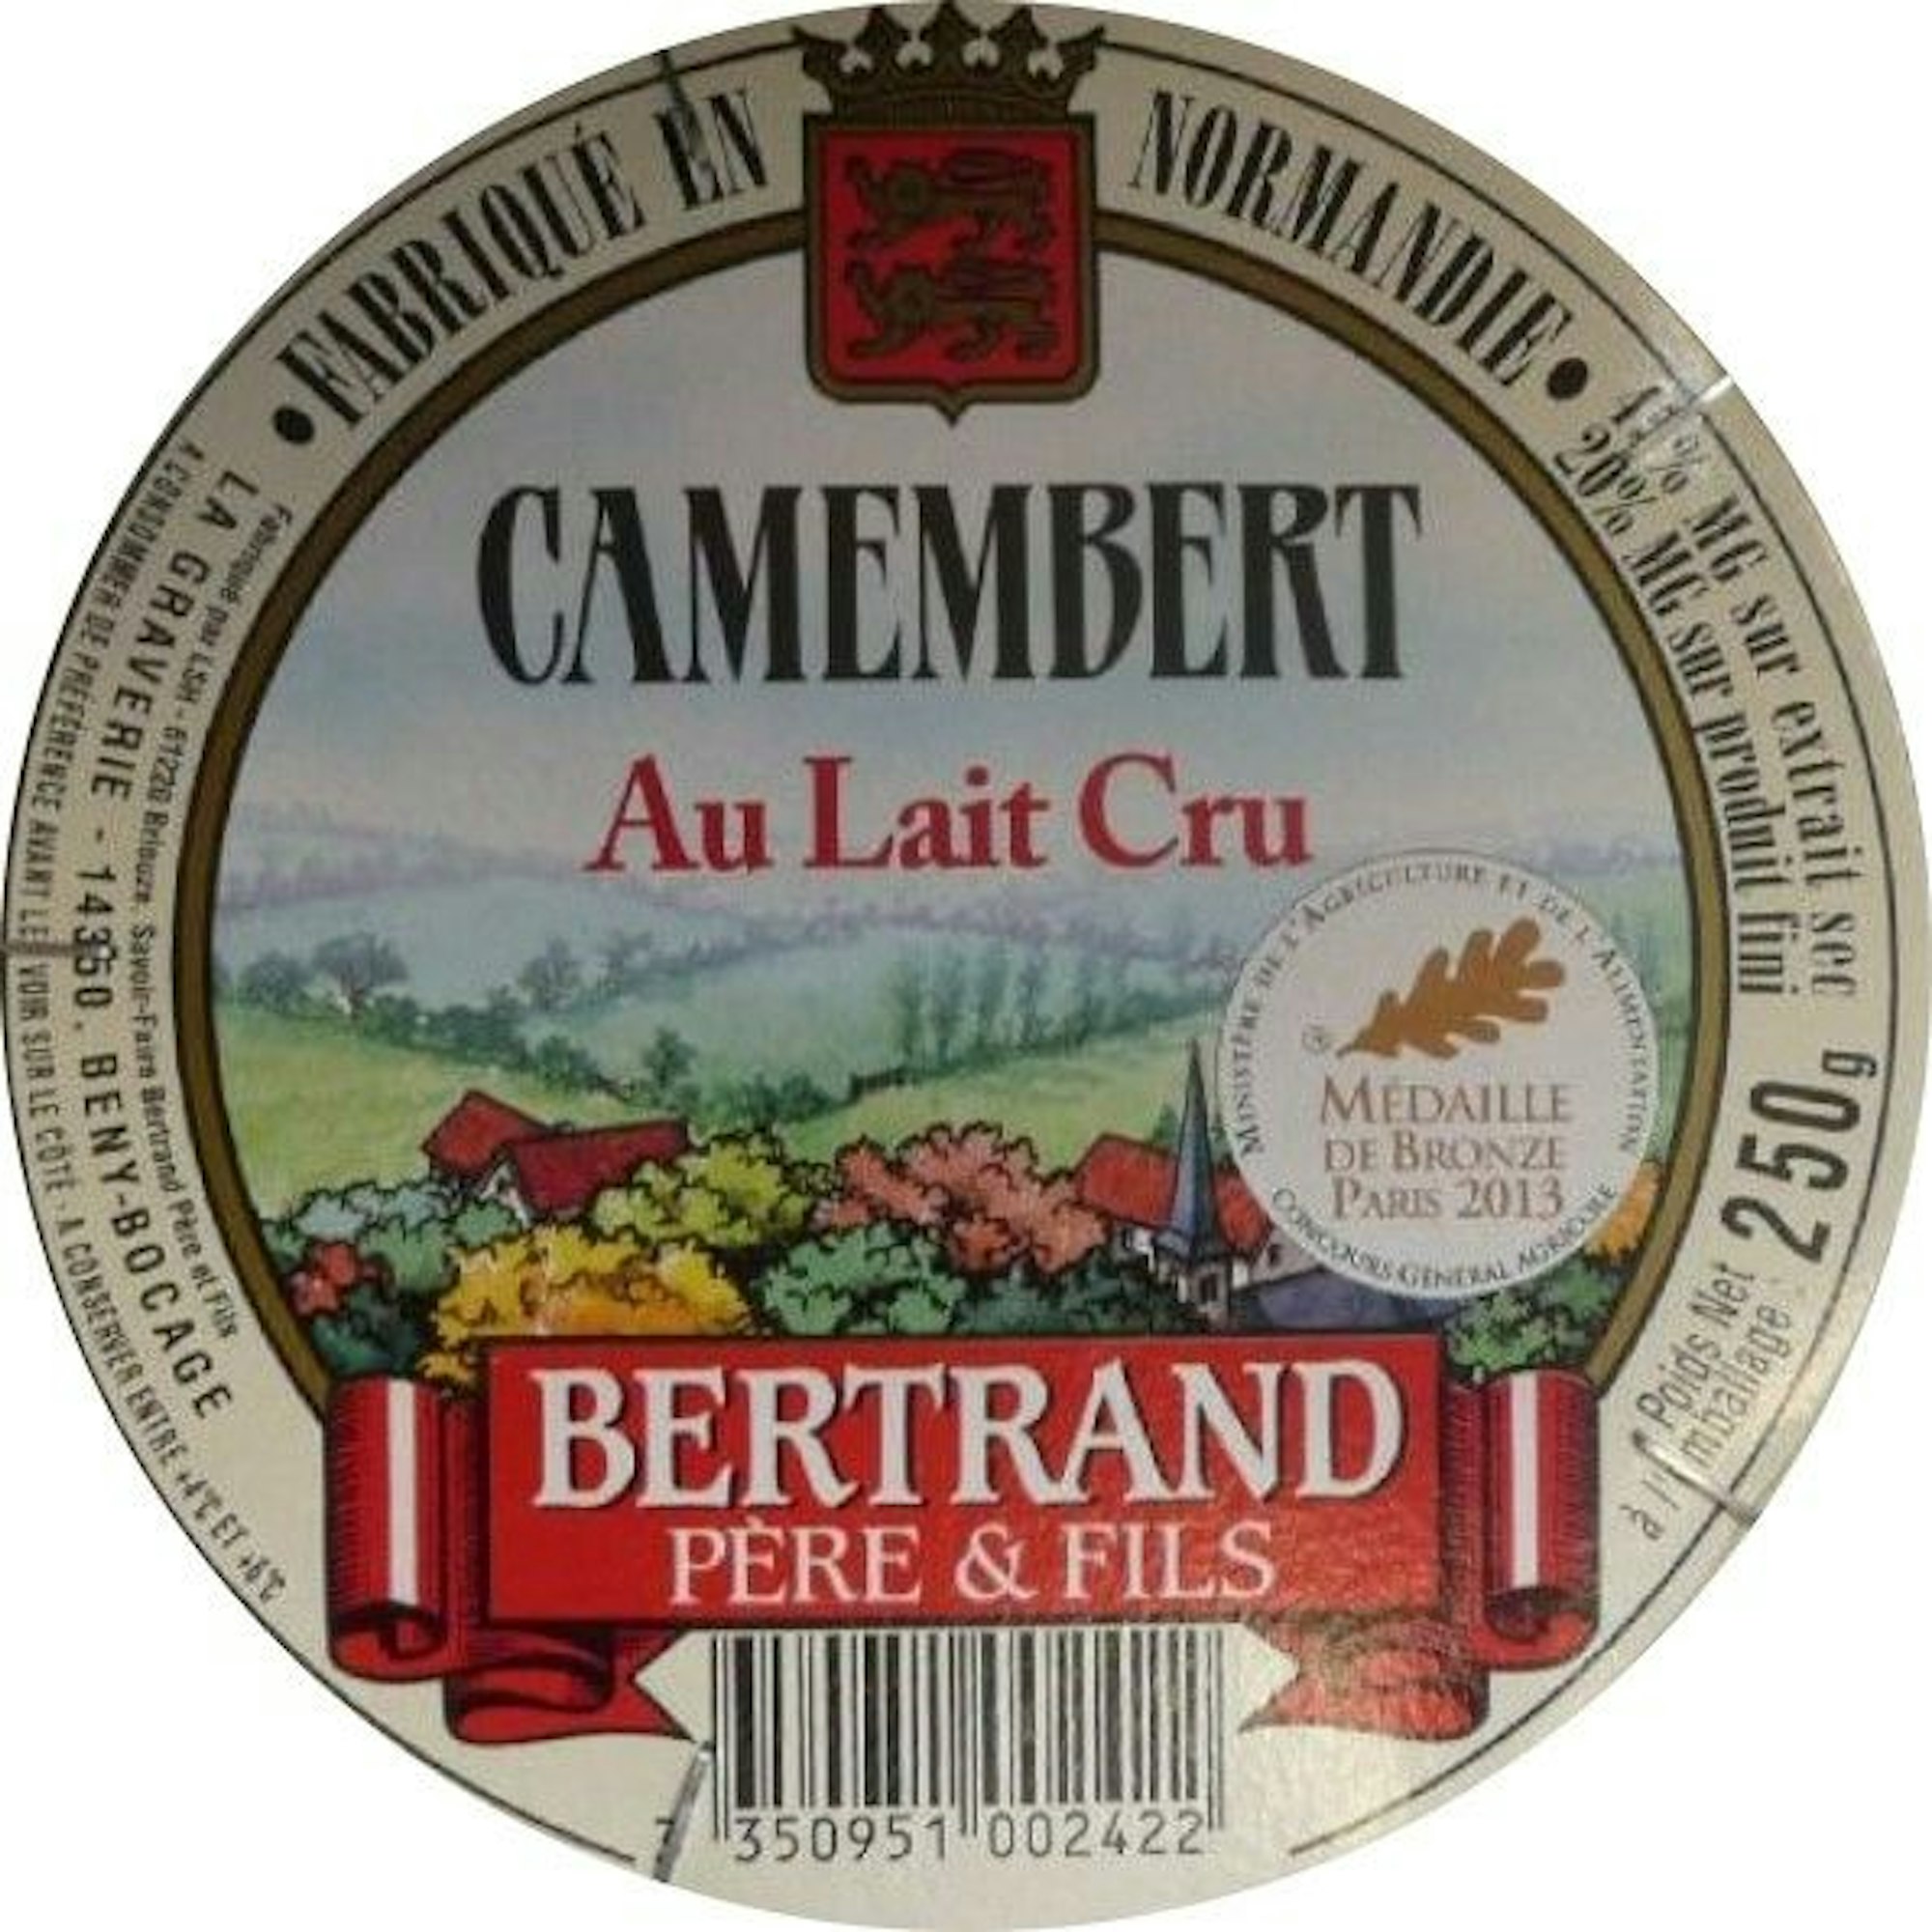 Rückruf von Käse wegen Verseuchung mit Bakterien: Betroffen ist das Produkt Camembert Bertrand (Camembert de Terroir au lait cru).